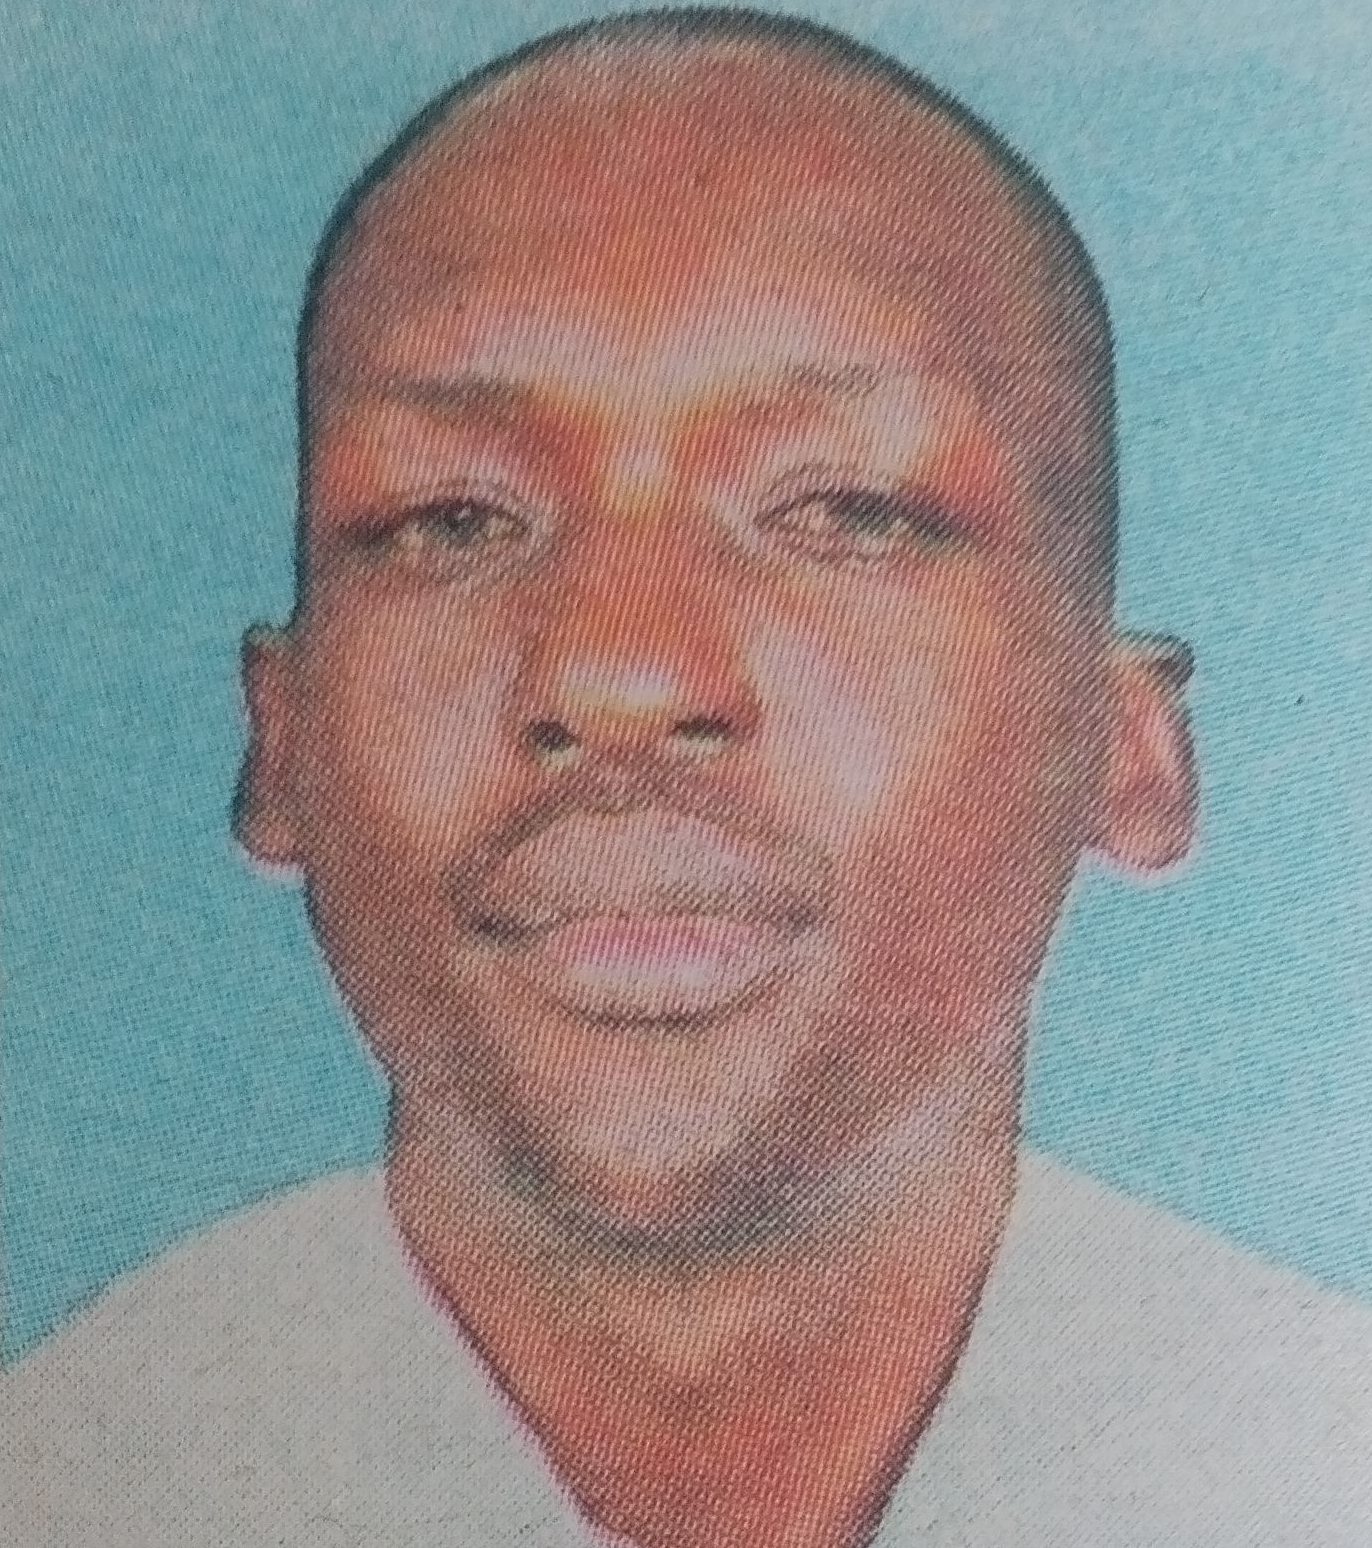 Obituary Image of Moses Ouma Oburu